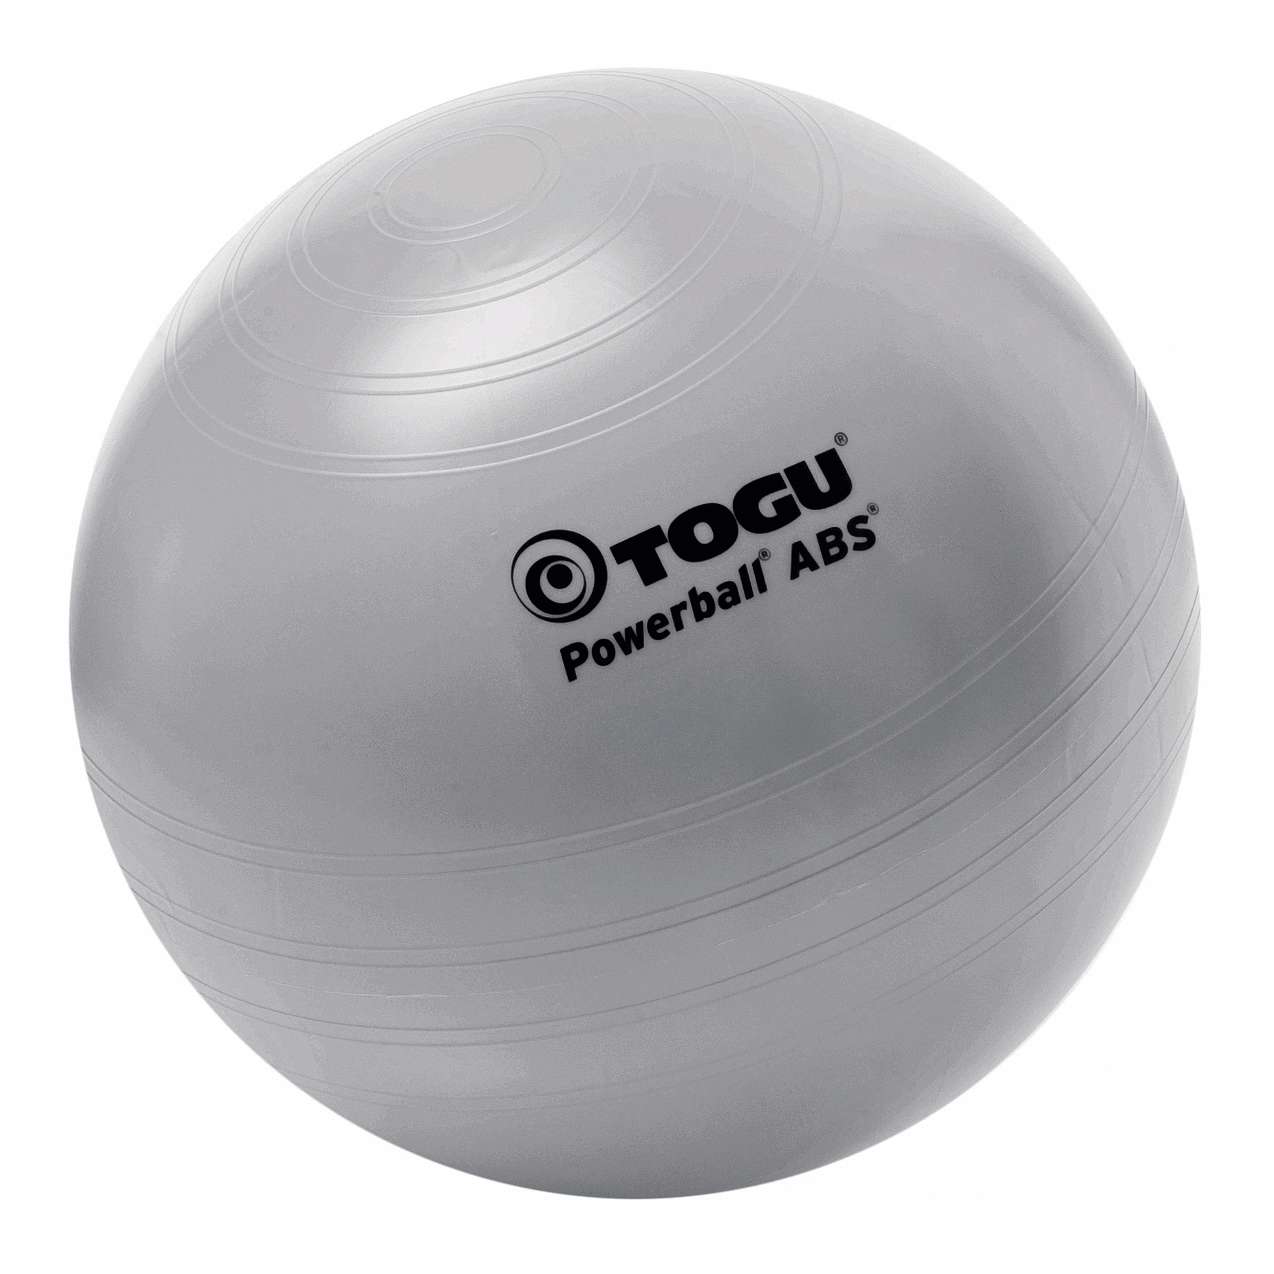 Togu Powerball "ABS", ø 55 cm von Togu